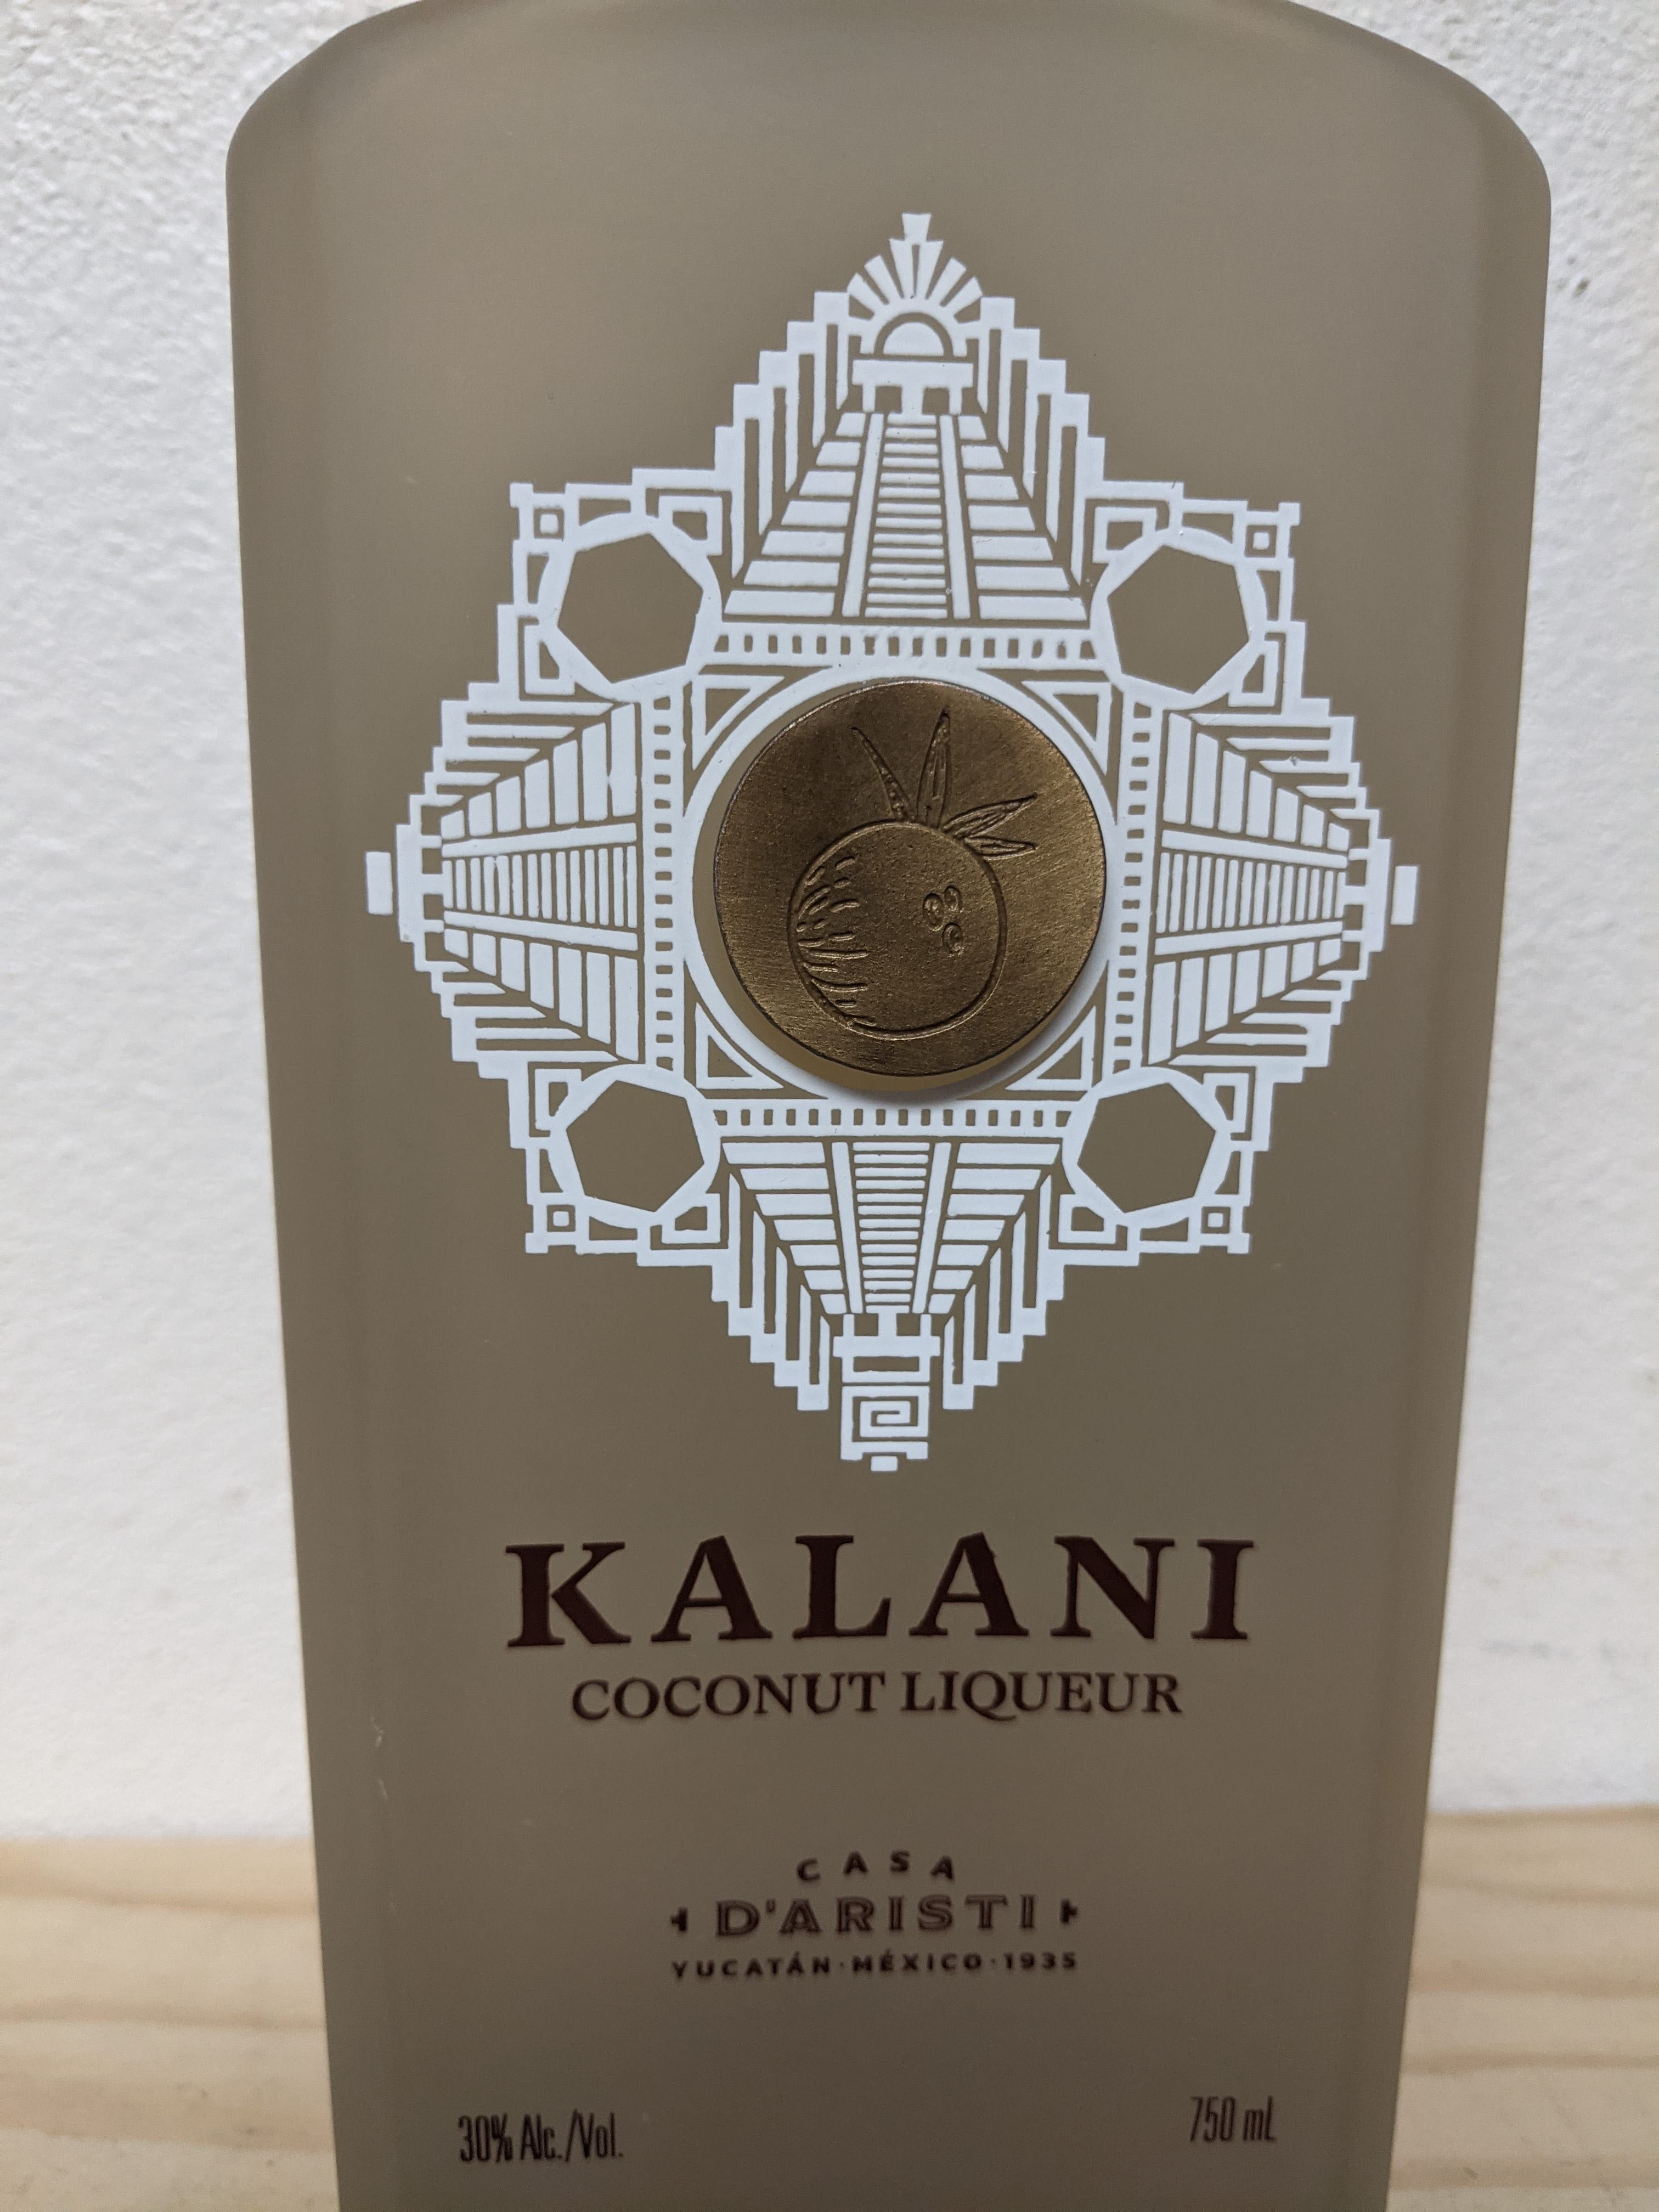 Kalani Coconut Liqueur, Casa D'Arist